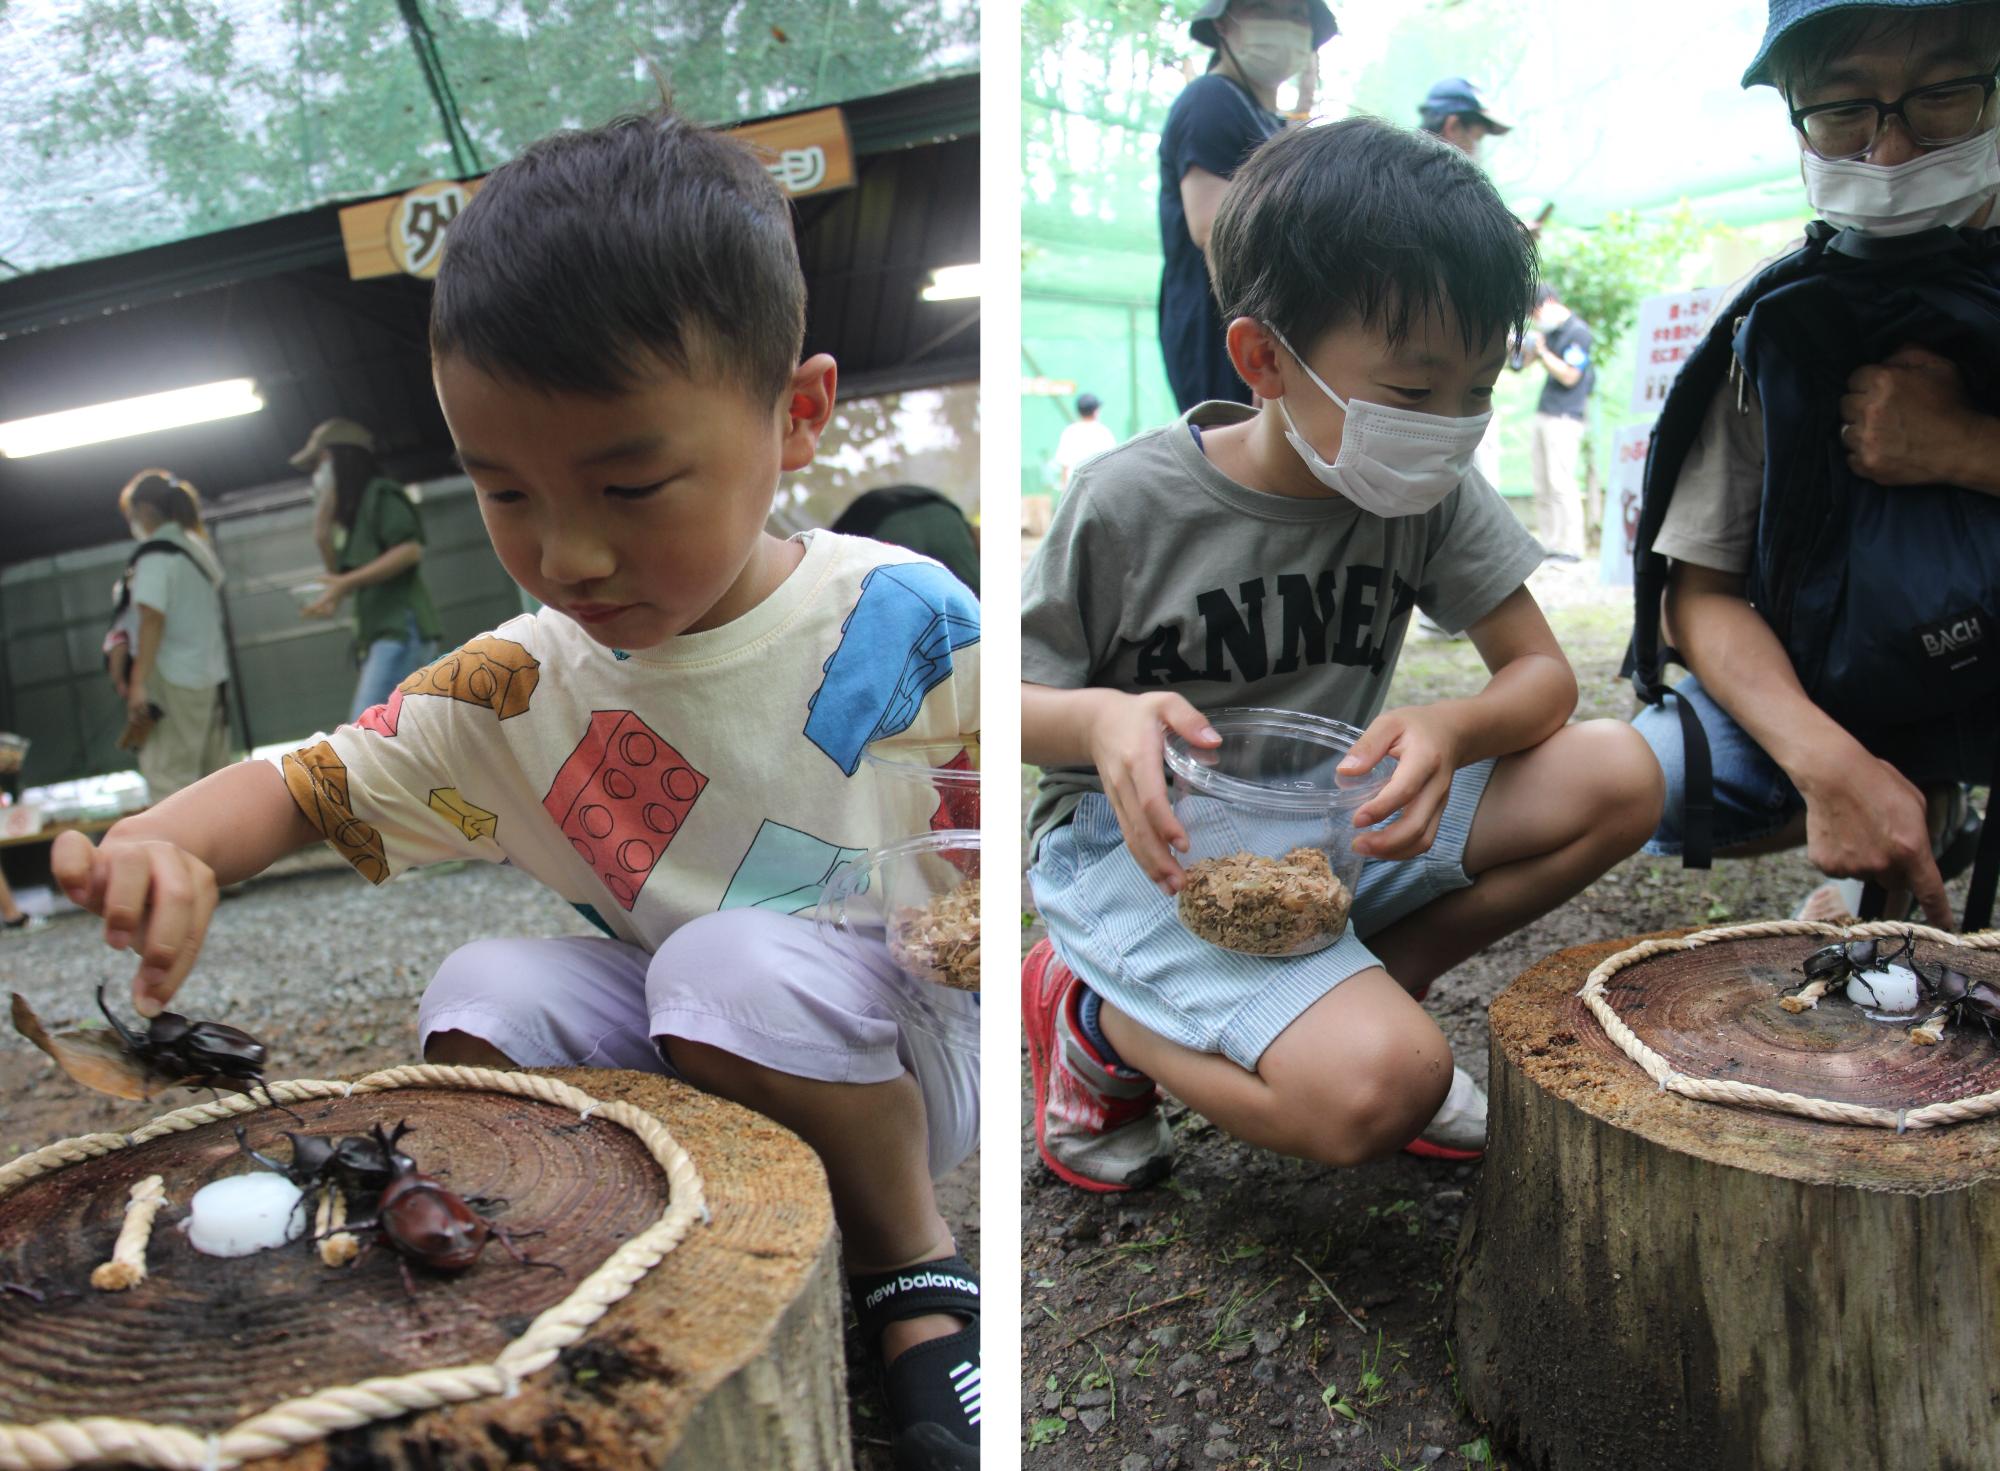 （左）カブトムシ相撲を楽しむ子どもの写真、（右）カブトムシ相撲を見ている親子の写真